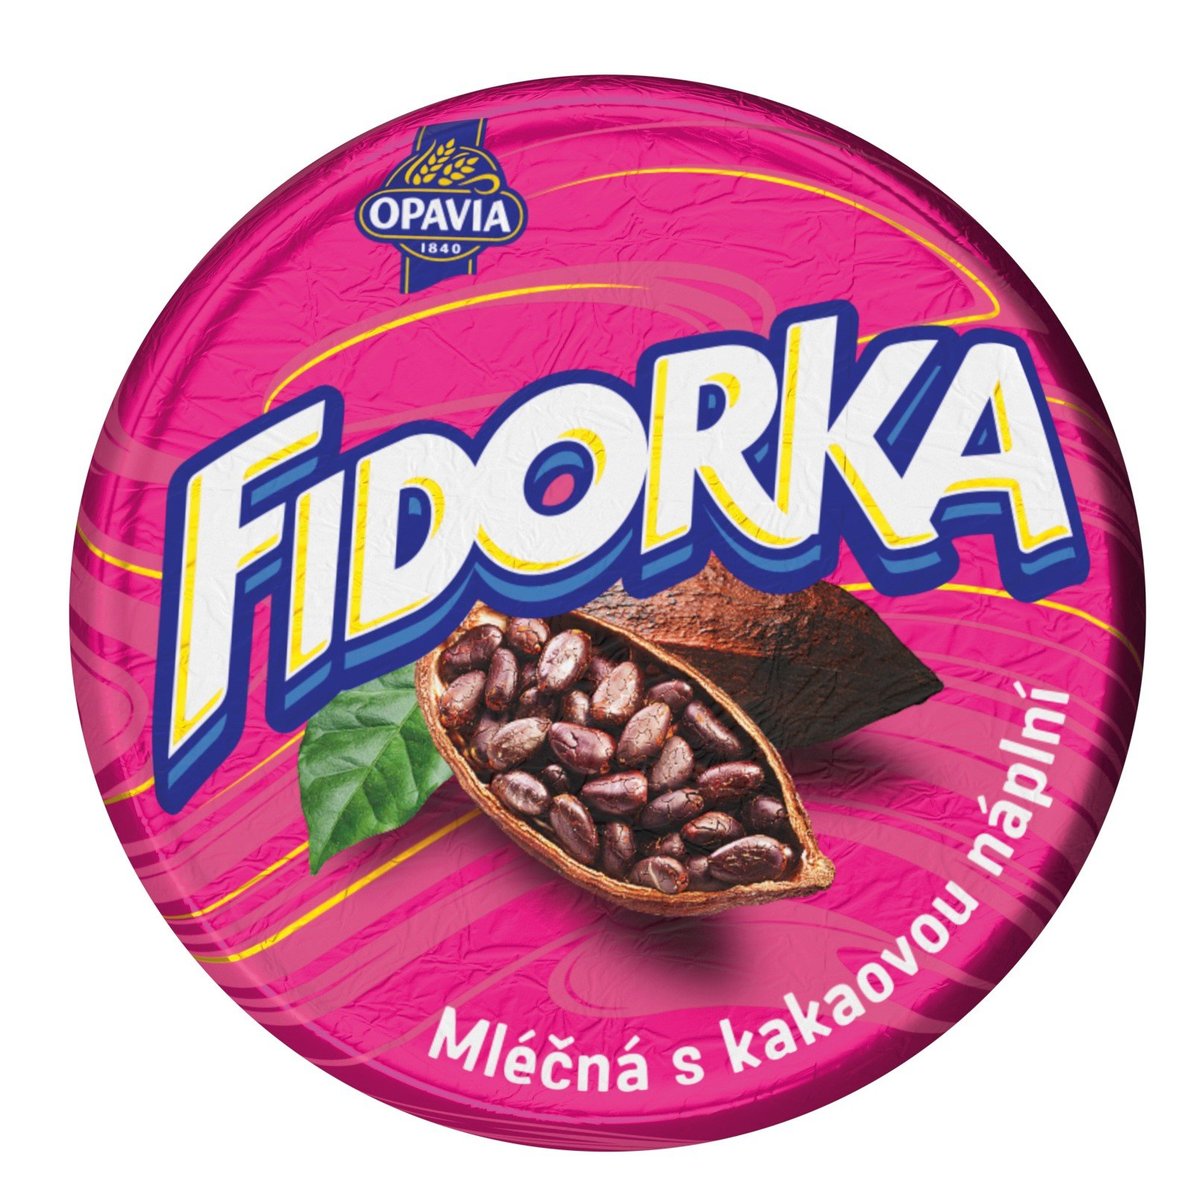 Opavia Fidorka mléčná s kakaovou náplní